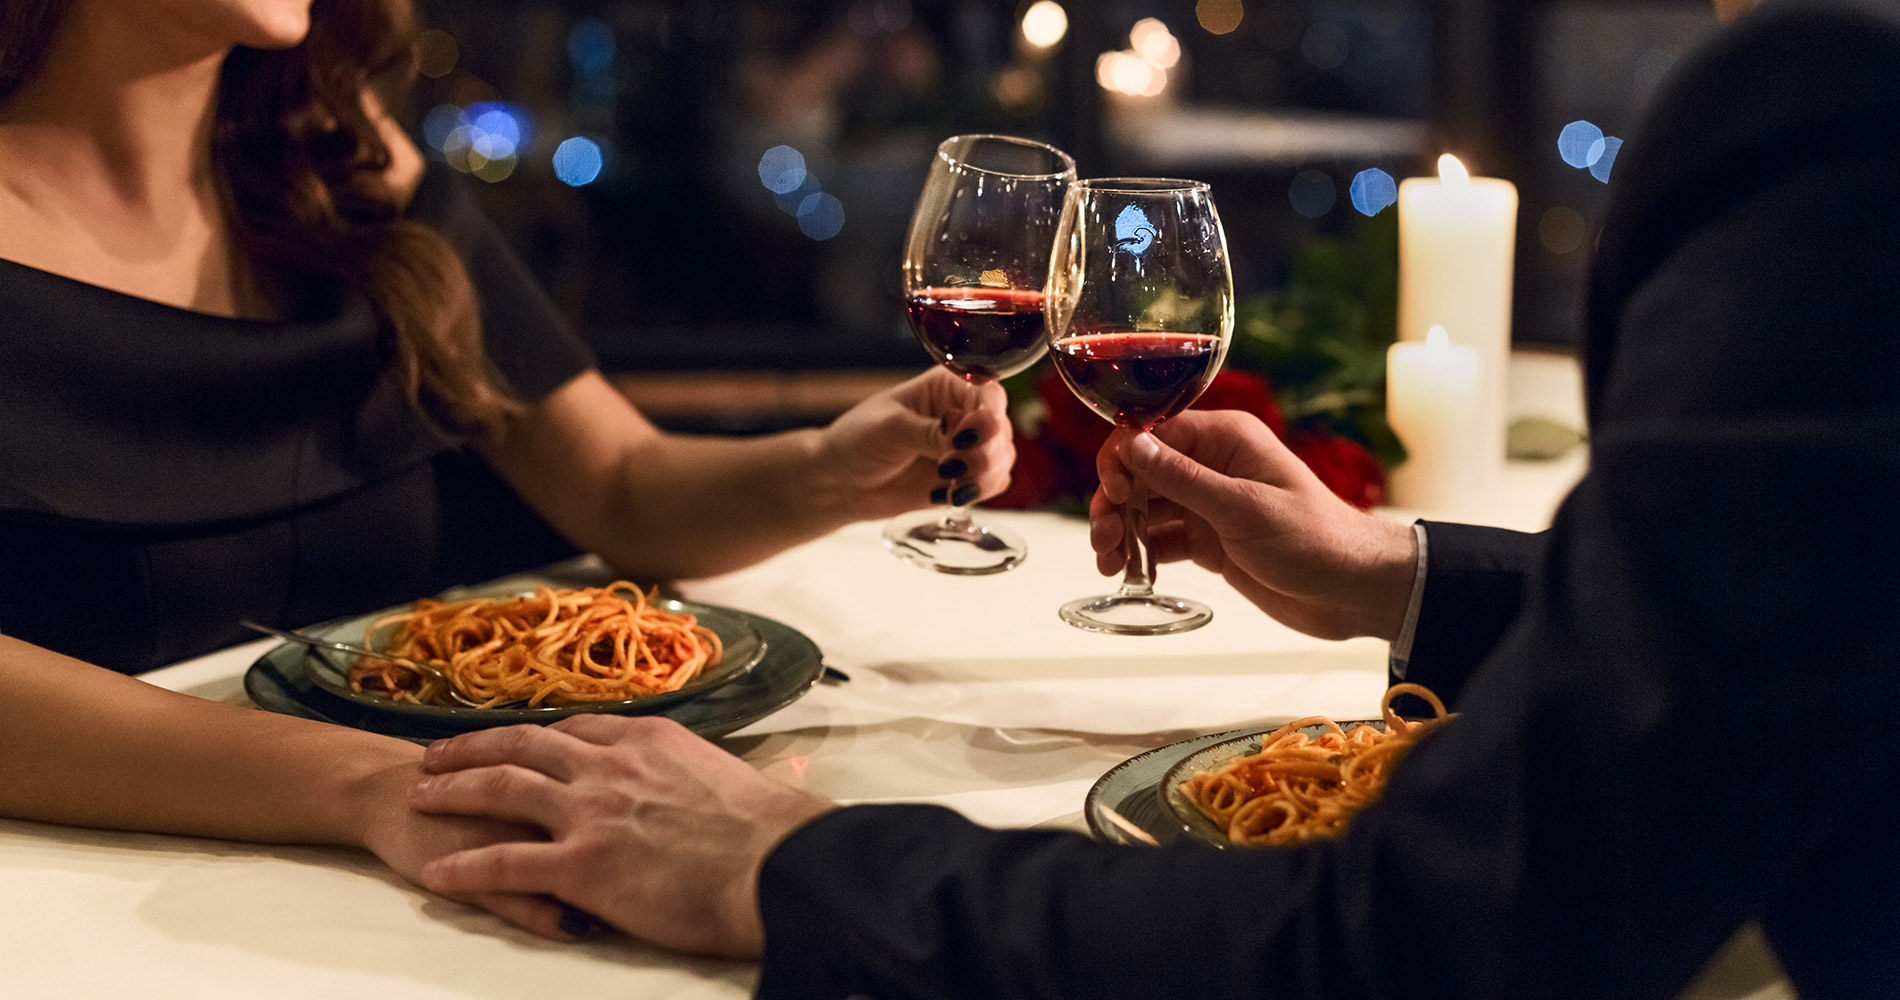 Coppia elegante al tavolo, con piatti di spaghetti e calici di vino rosso